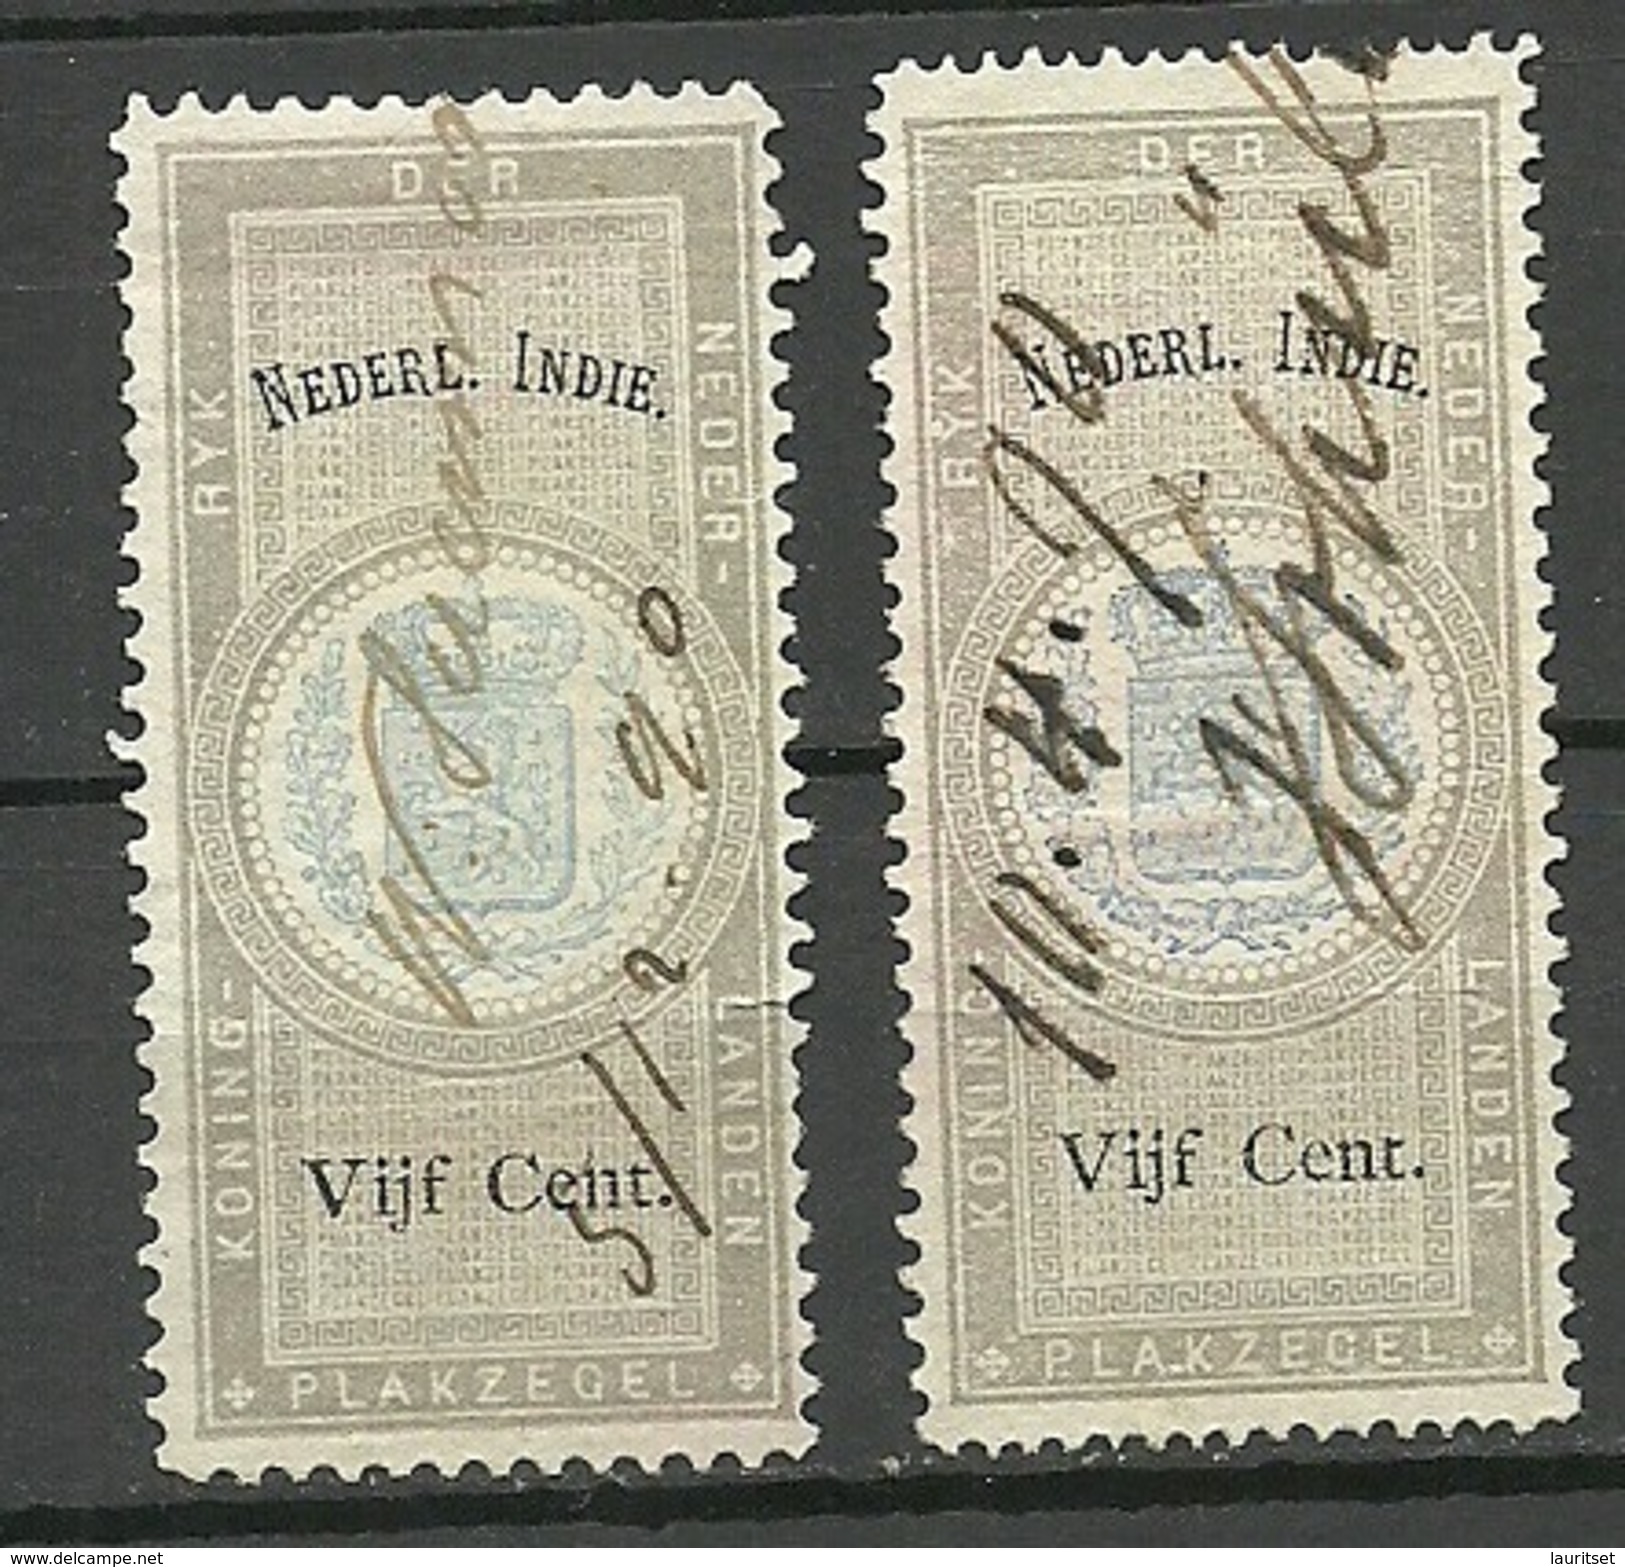 NEDERLAND-INDIE Netherland-India 1890 Old Revenue Tax Stamps O - Indes Néerlandaises